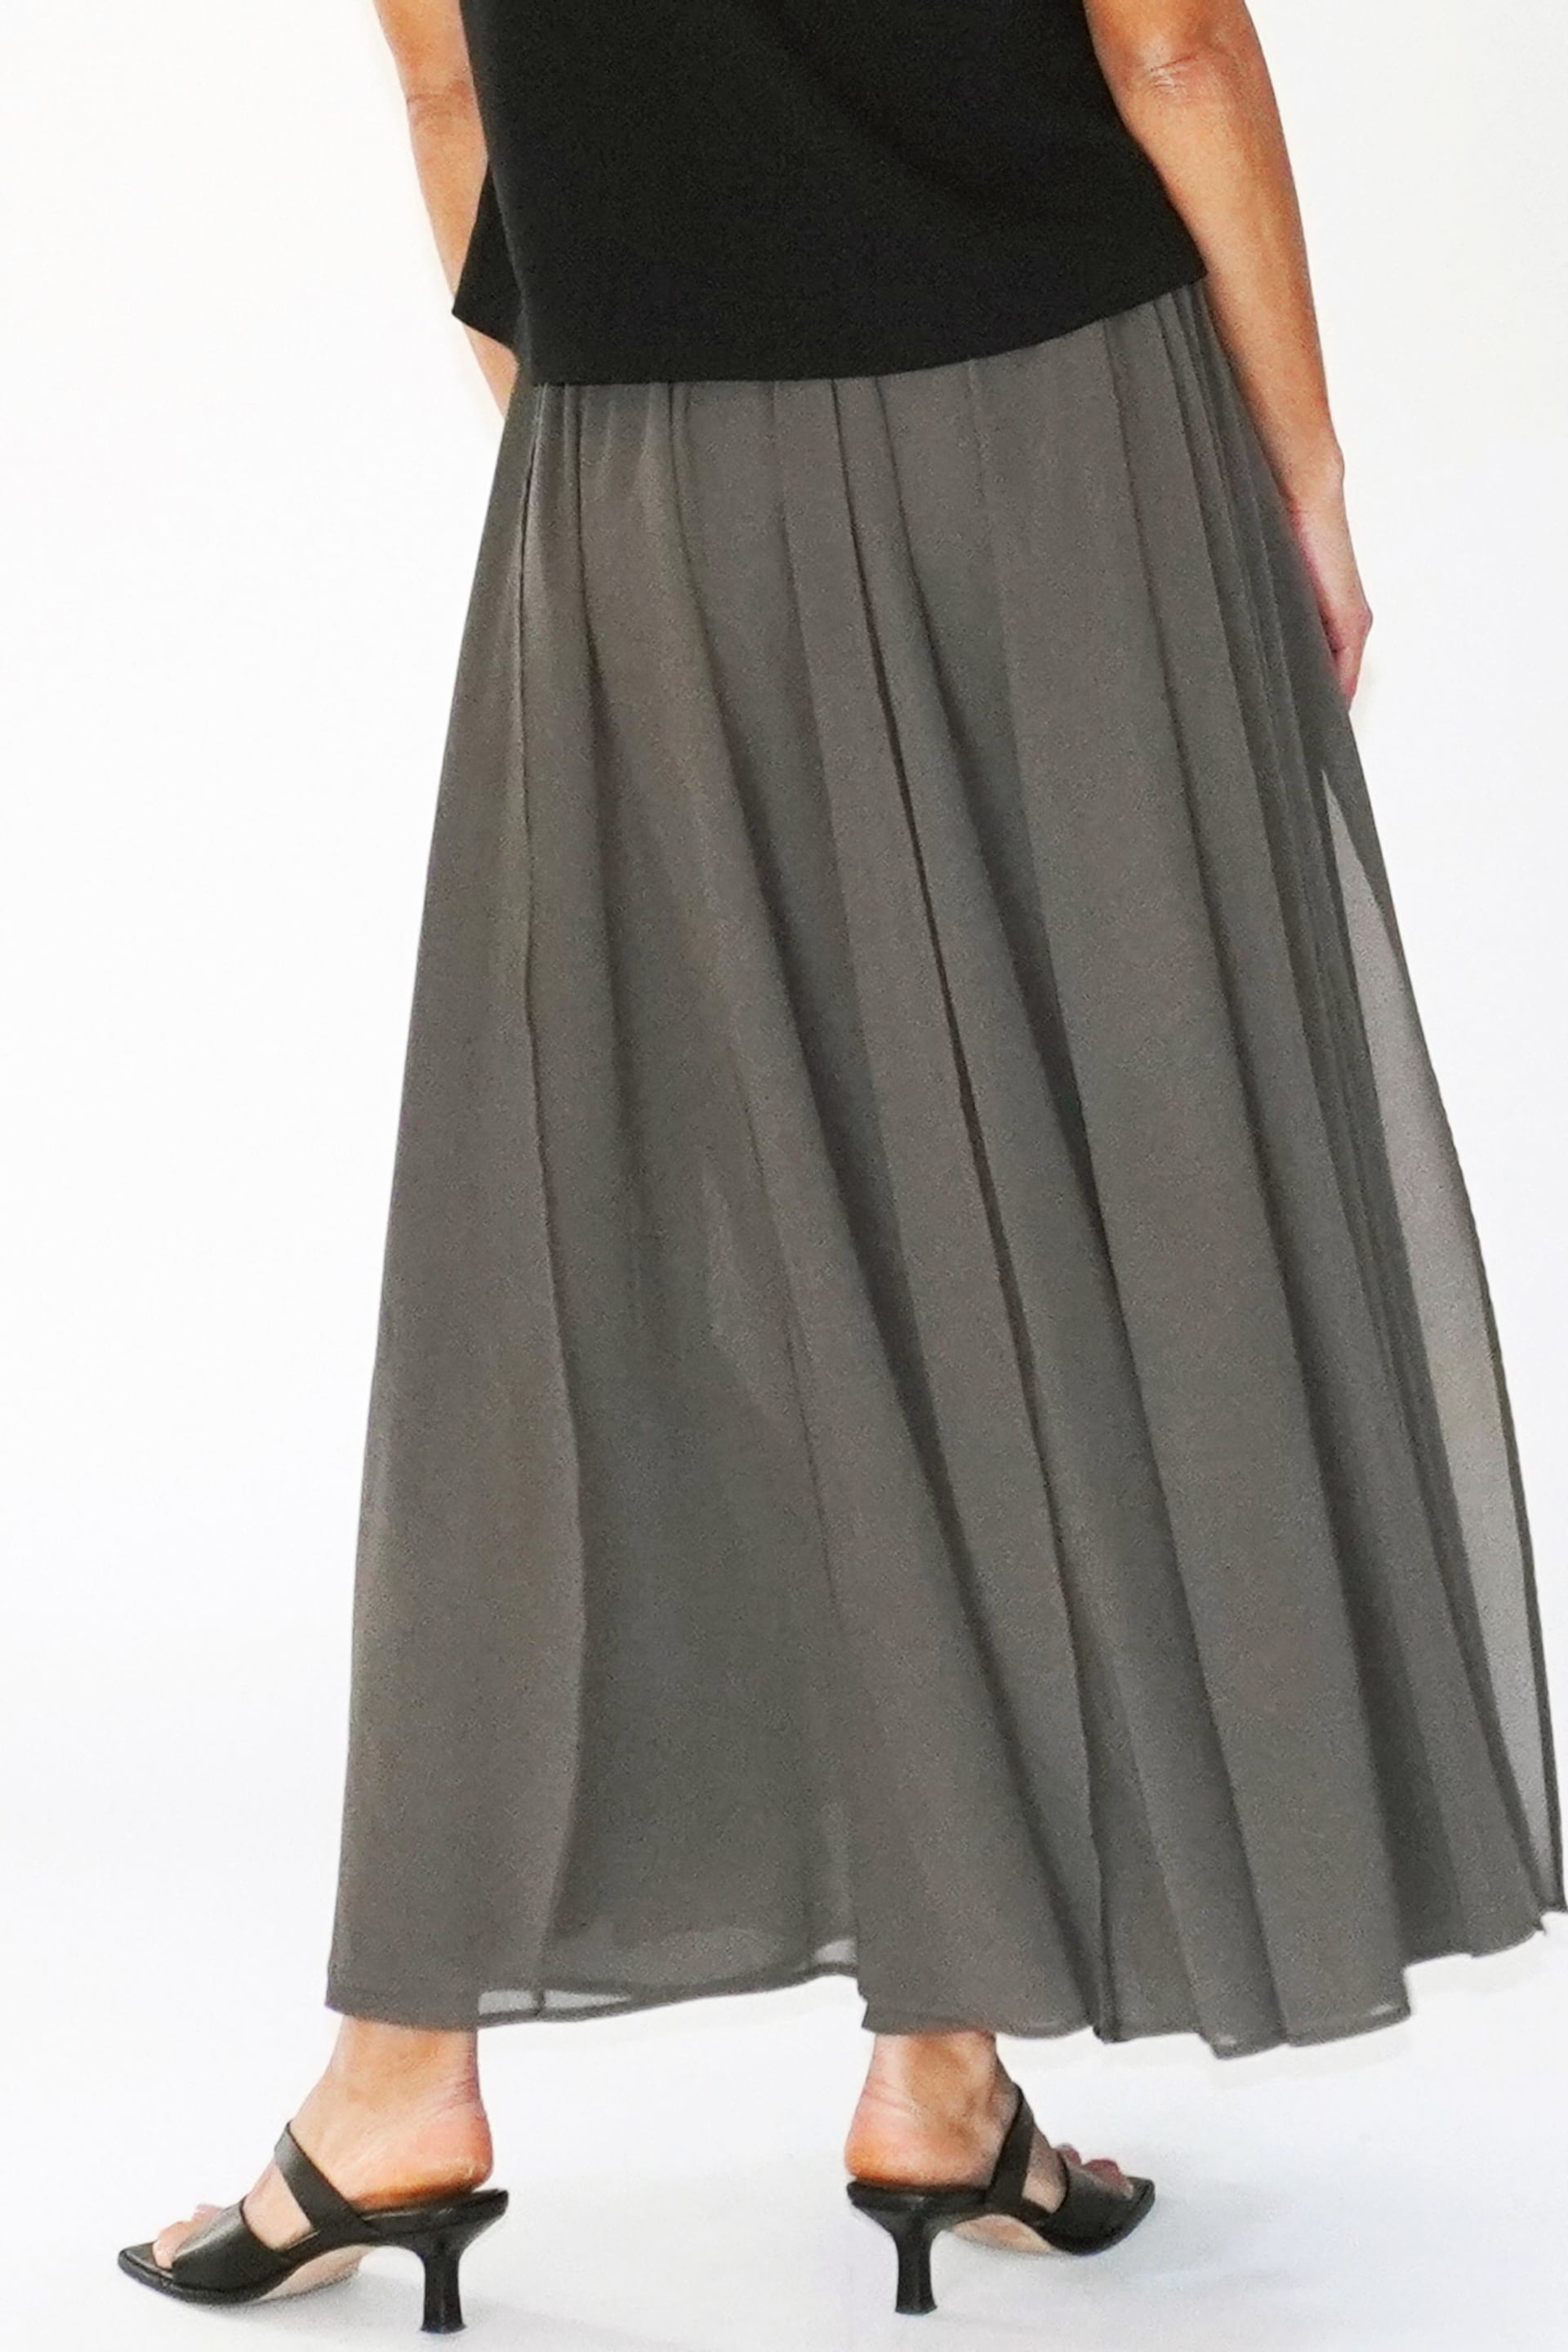 Religion Brown Eligion Floaty Sheer Multi Layered Olsen Maxi Skirt - Image 2 of 6